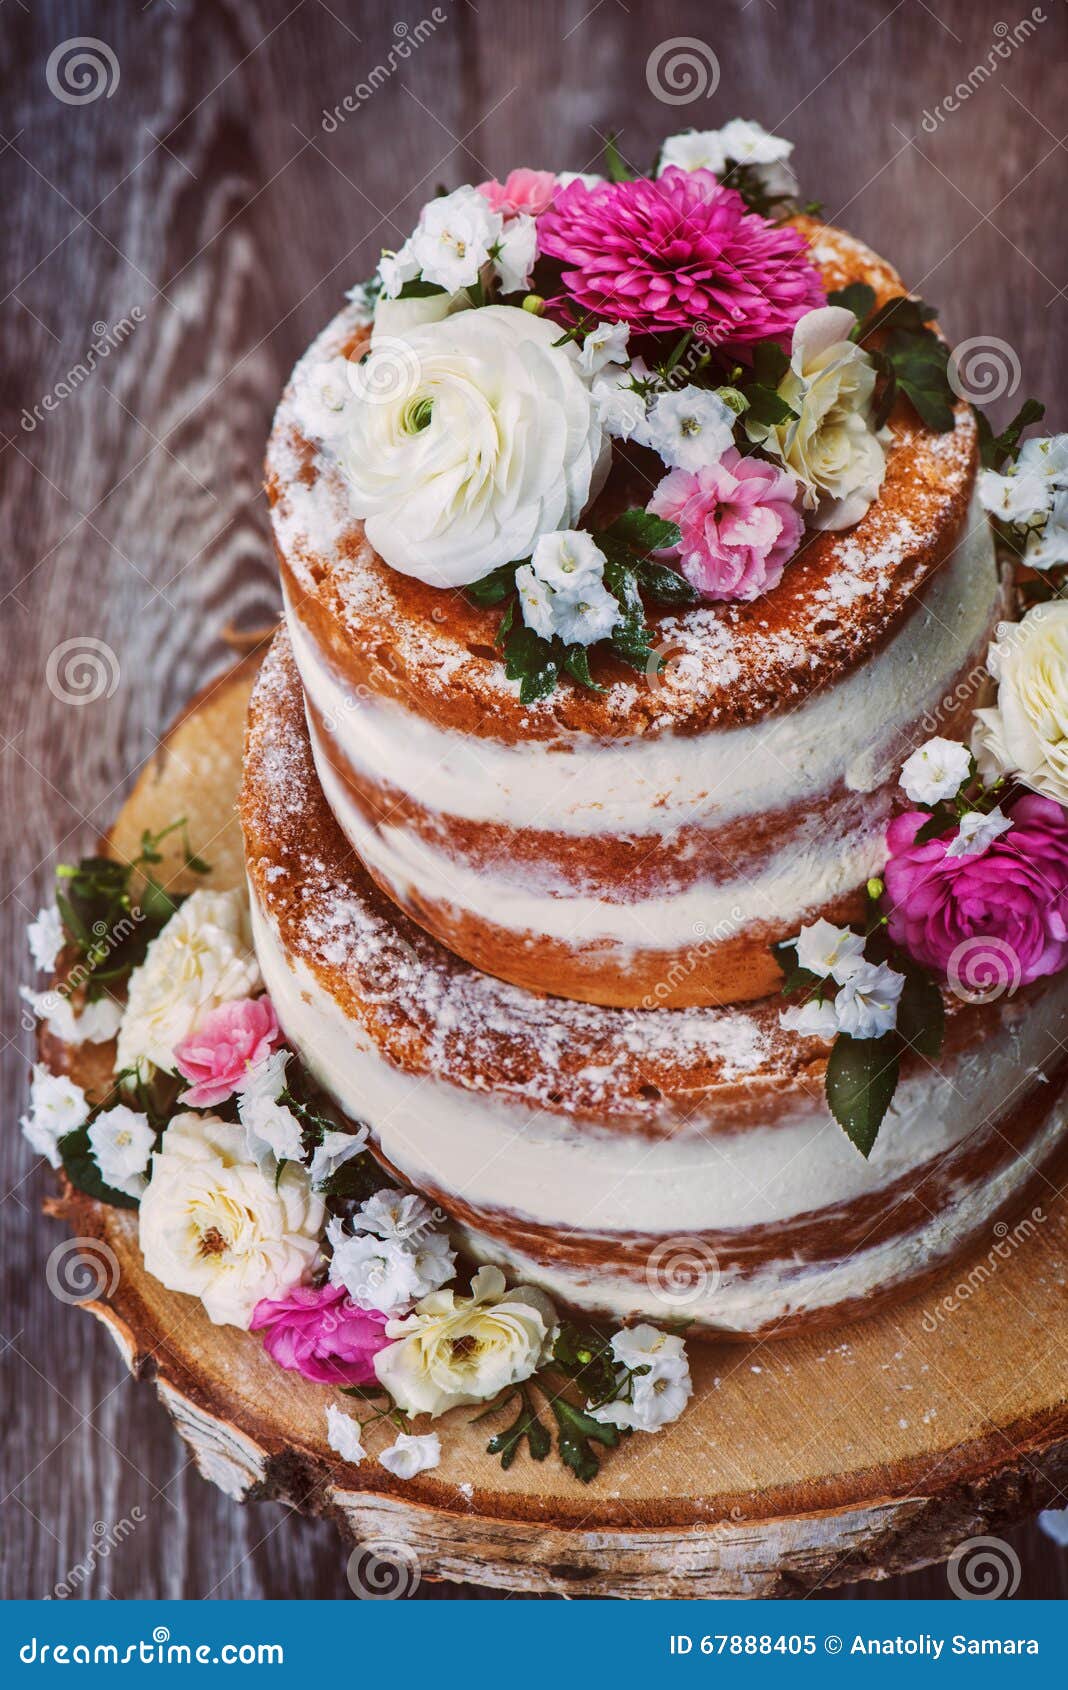 Naked Cake zur Hochzeit - Top 35 Tipps, Ideen & Inspirationen